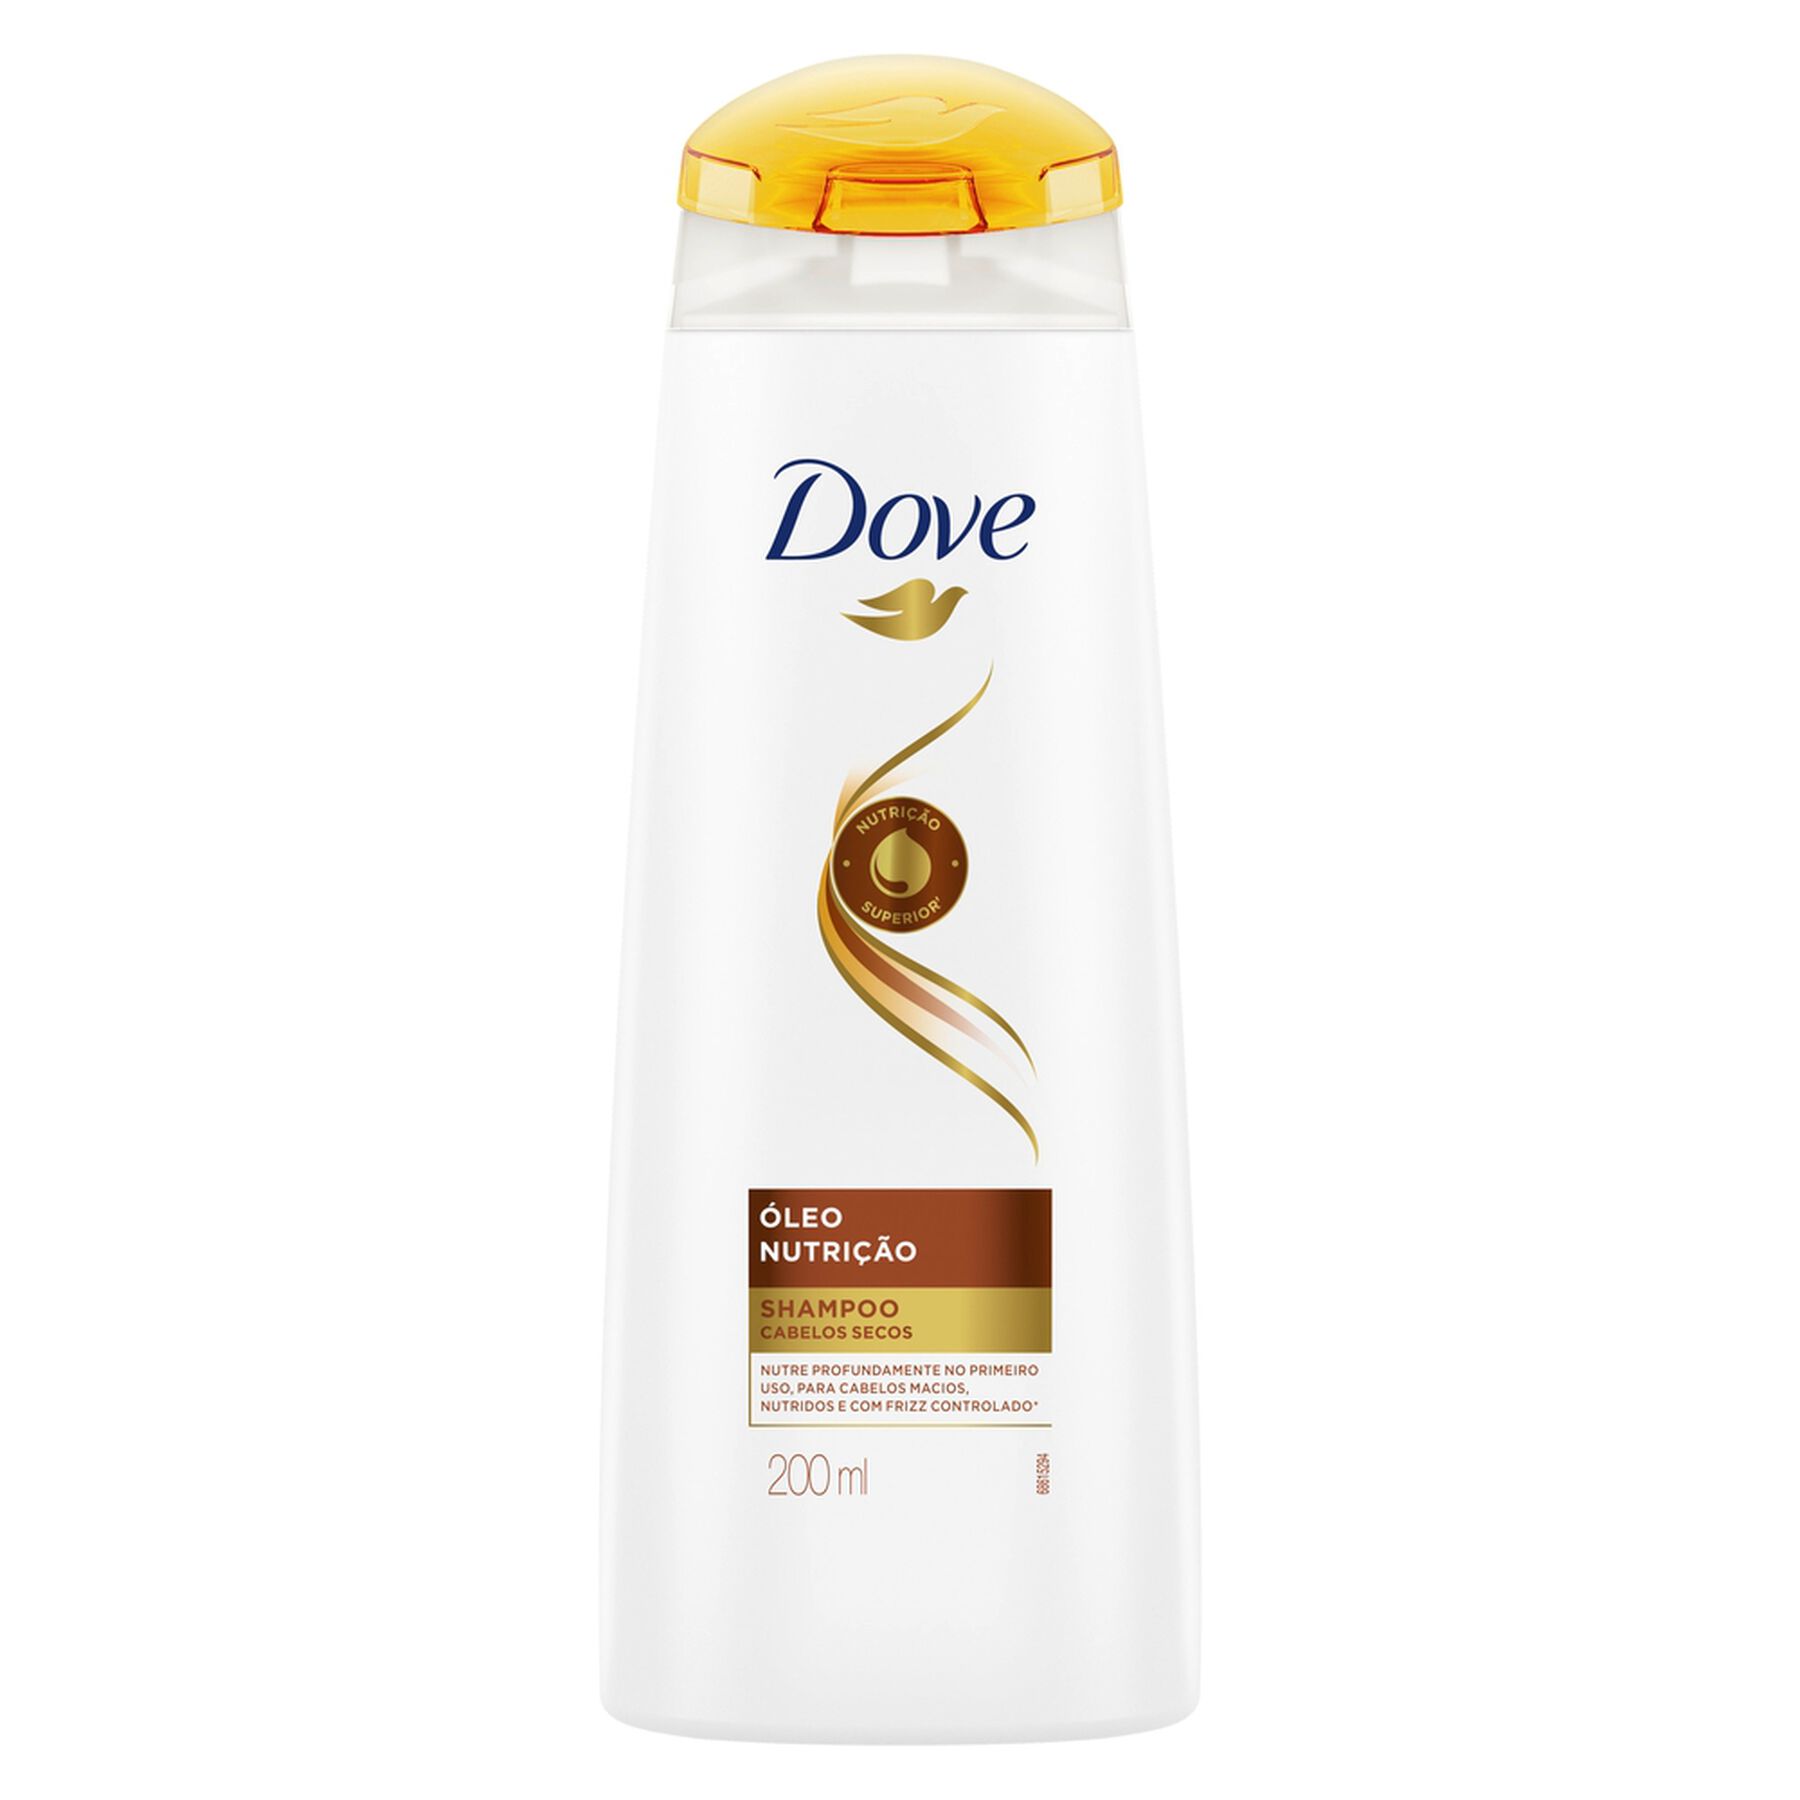 Shampoo Dove Nutritive Solutions Óleo Nutrição Frasco 200ml